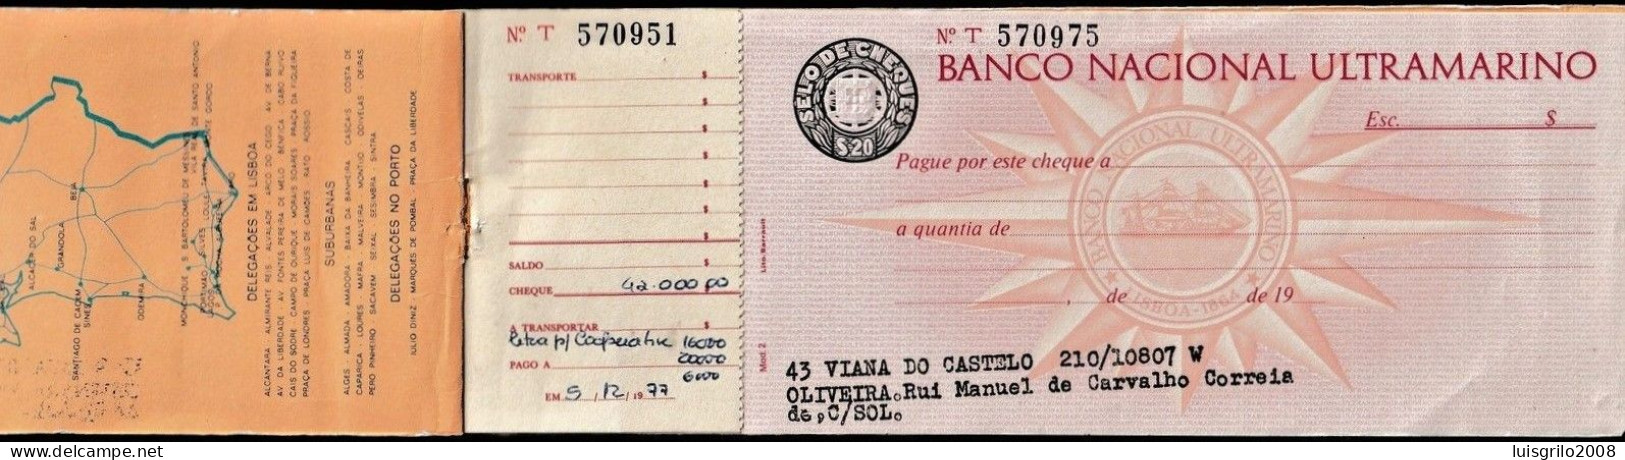 Portugal, Cheque/ Capa Caderneta - Banco Nacional Ultramarino. Viana Do Castelo - Cheques En Traveller's Cheques